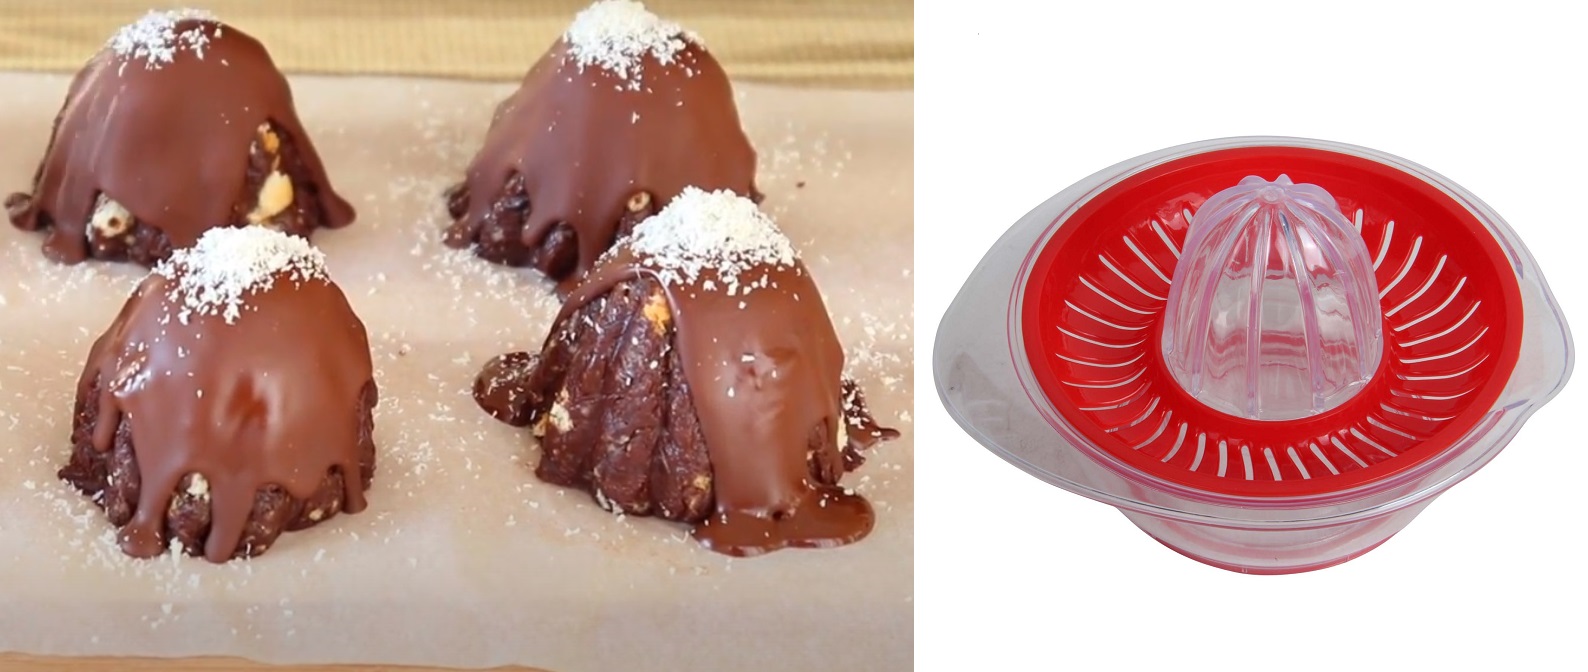 Συνταγή για Χριστουγεννιάτικα δεντράκια σοκολάτα Δούκισσα φτιαγμένα με λεμονοστίφτη!